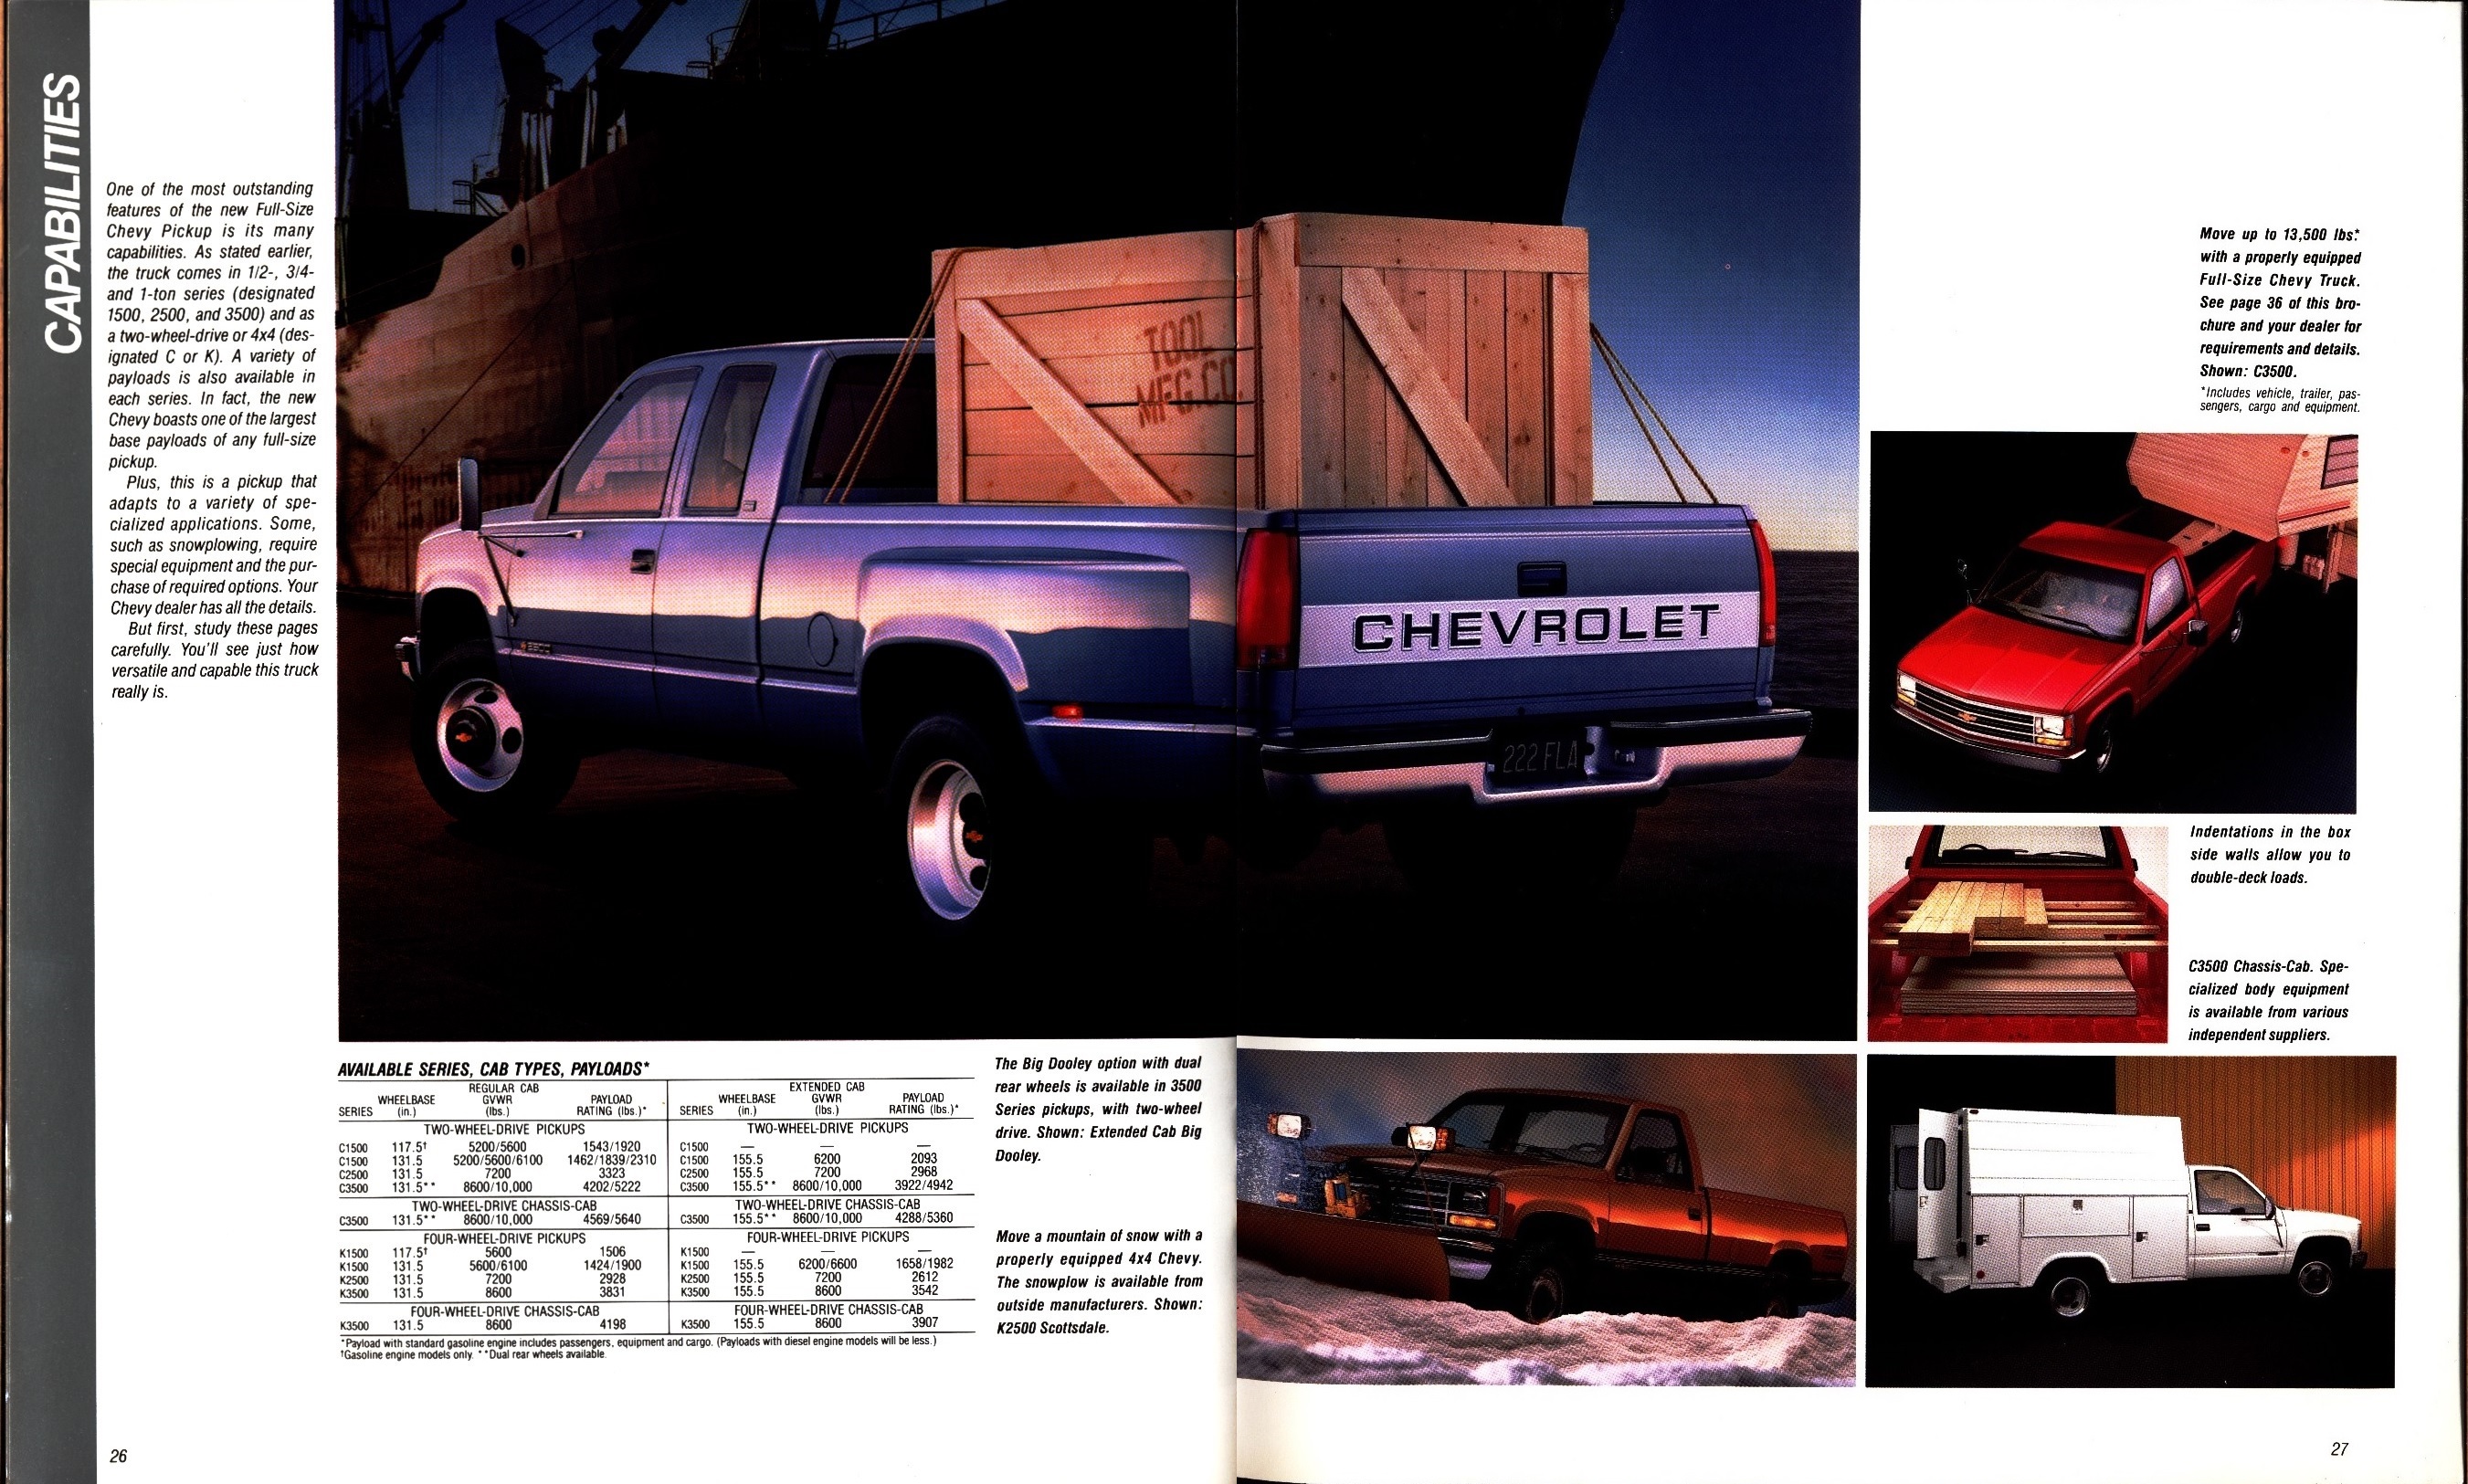 1988 Chevrolet Full Size Pickup Brochure (Rev) 26-27